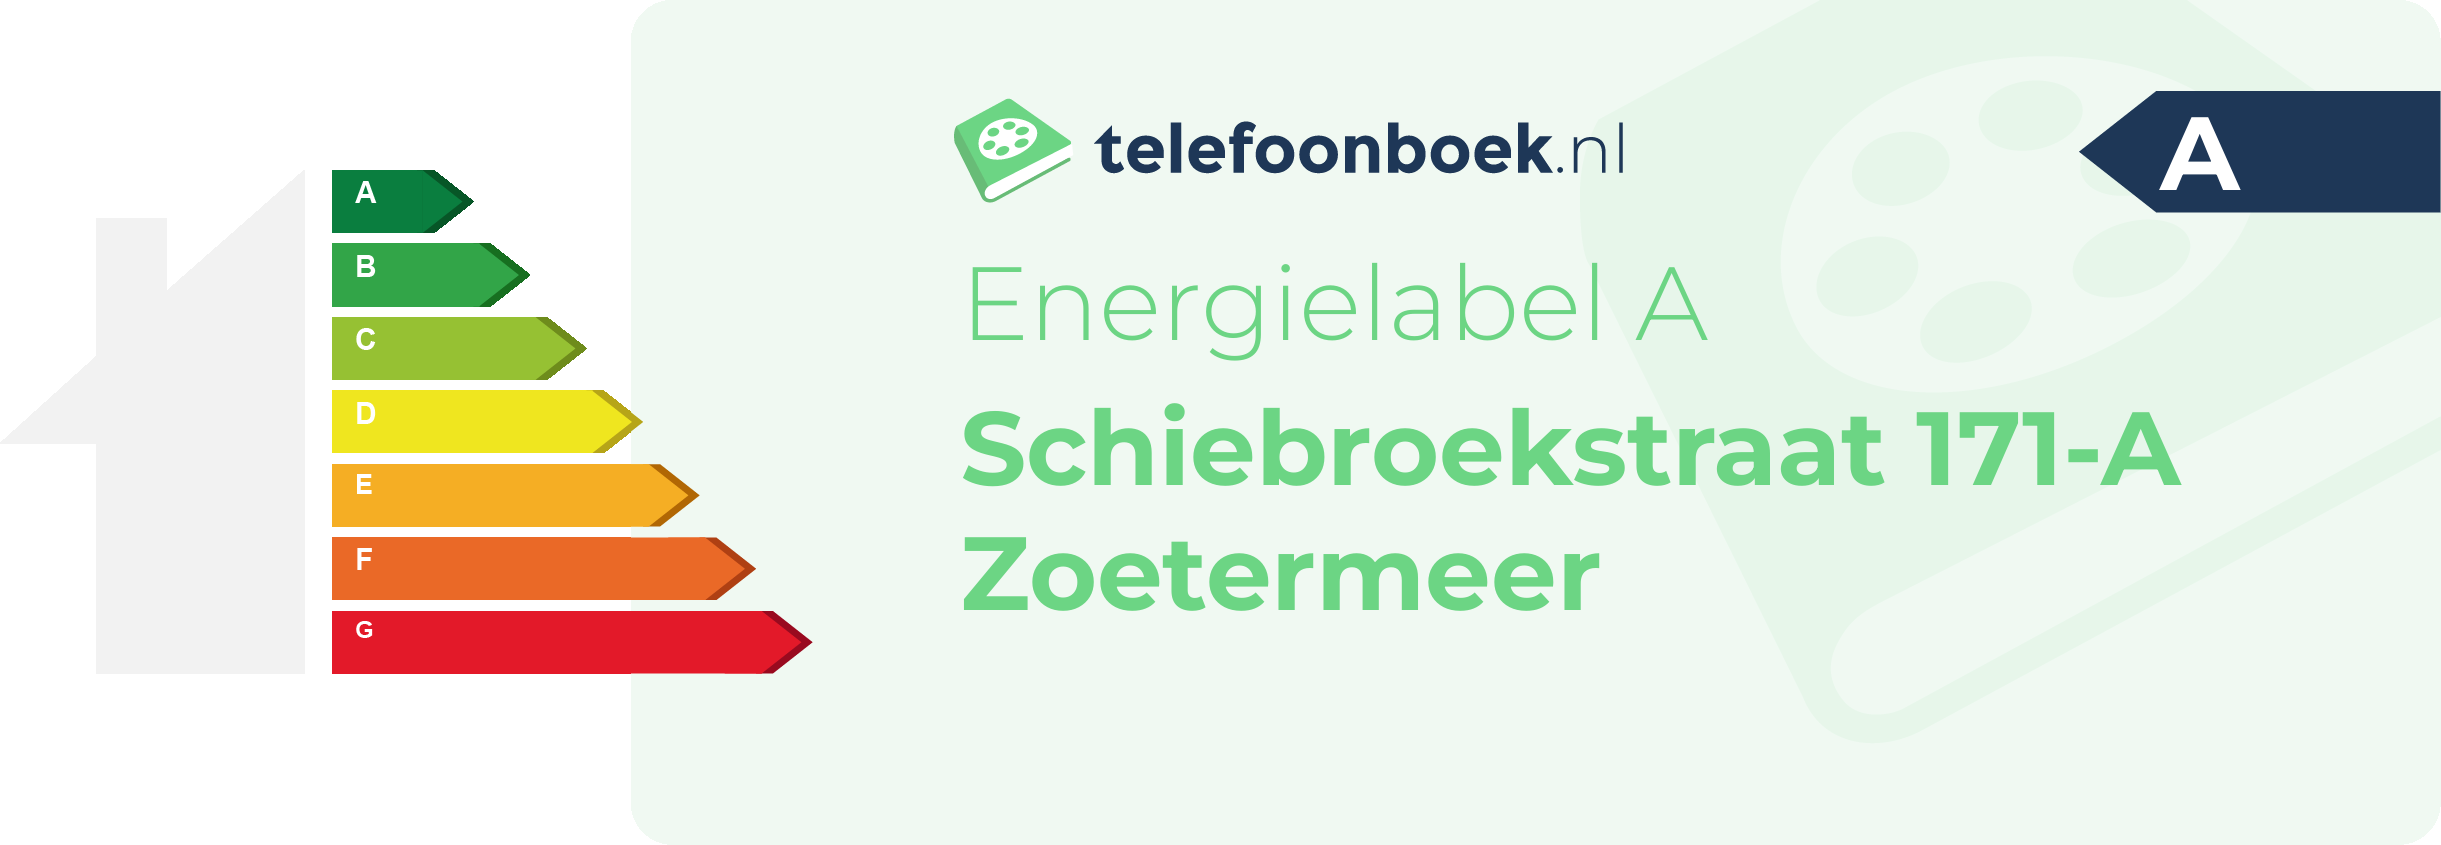 Energielabel Schiebroekstraat 171-A Zoetermeer